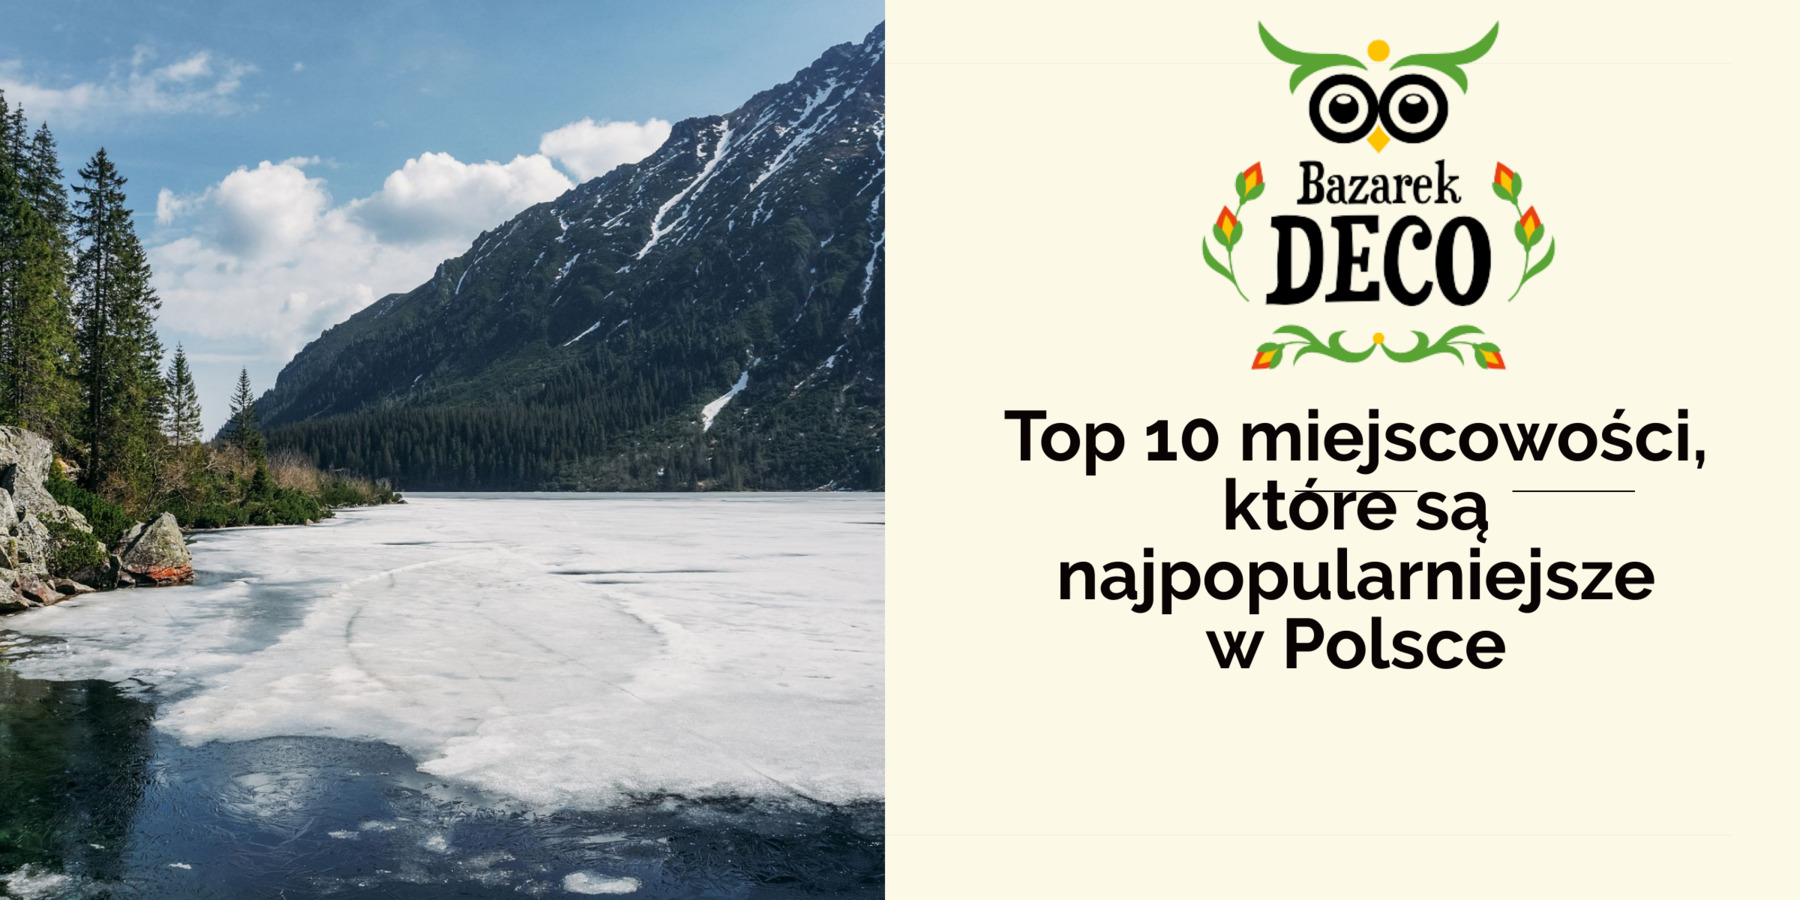 <strong>Top 10 miejscowości, które są najpopularniejsze w Polsce</strong>